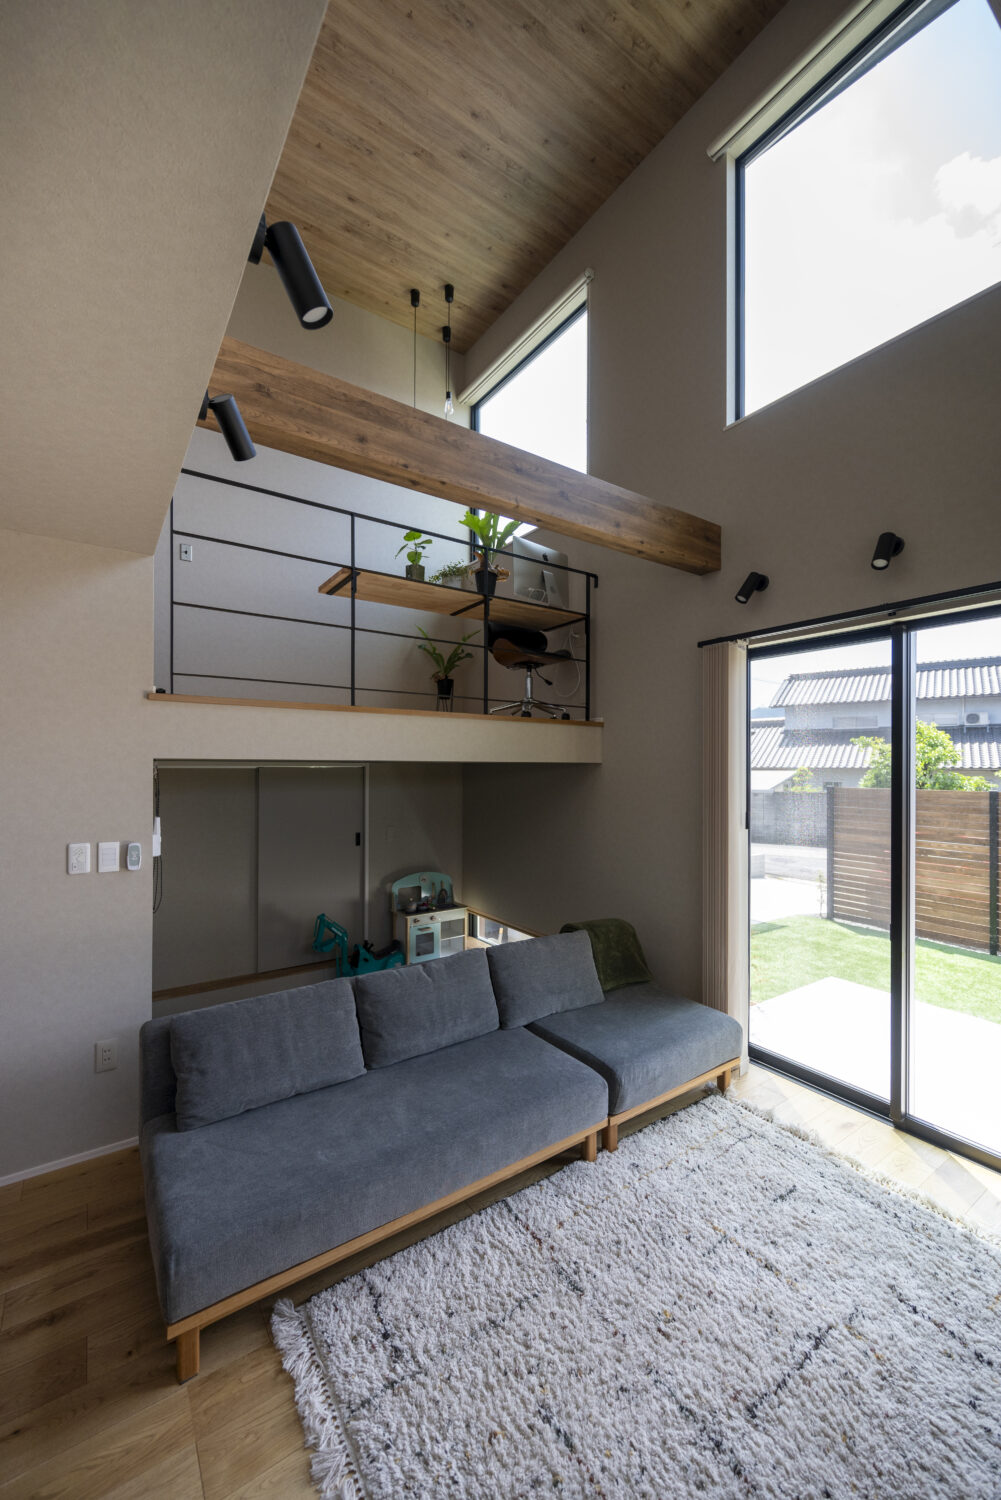 広島県福山市
アイデザインホーム
注文住宅
リビング、吹抜には大きな窓を設け陽光がたっぷり降り注ぐよう計画
スキップ下の畳コーナーは秘密基地のようで子ども心をくすぐります